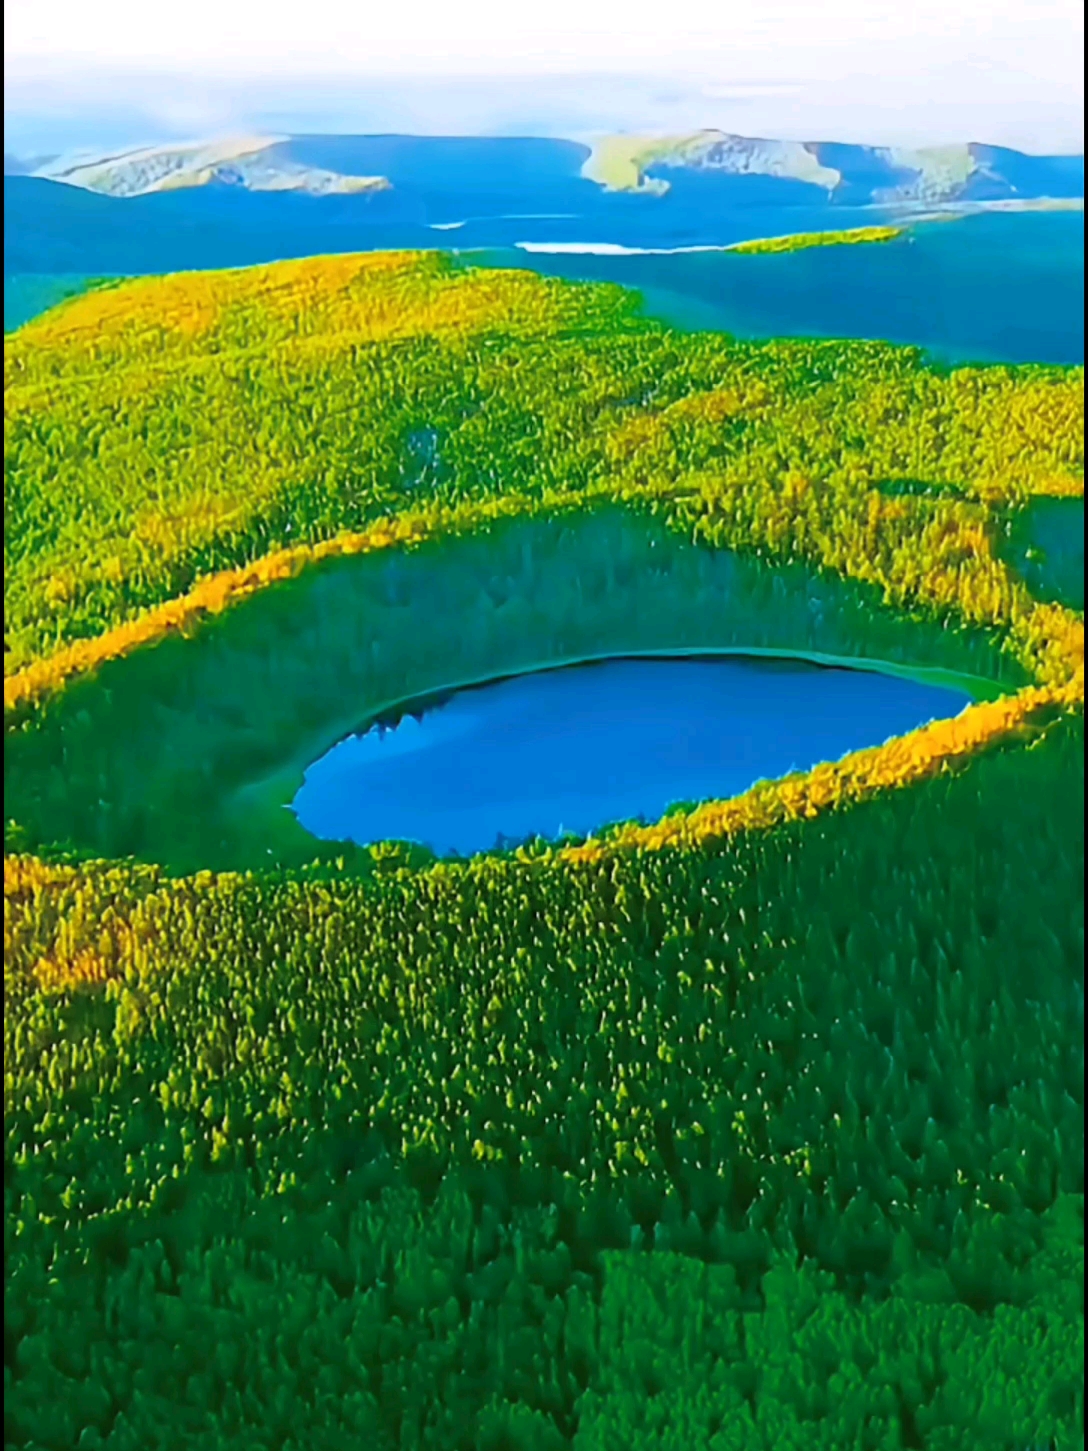 **探秘**：阿尔山天池的隐藏之美，俯拍视角大公开#旅行过家家 #阿尔山旅游攻略 #最美天池